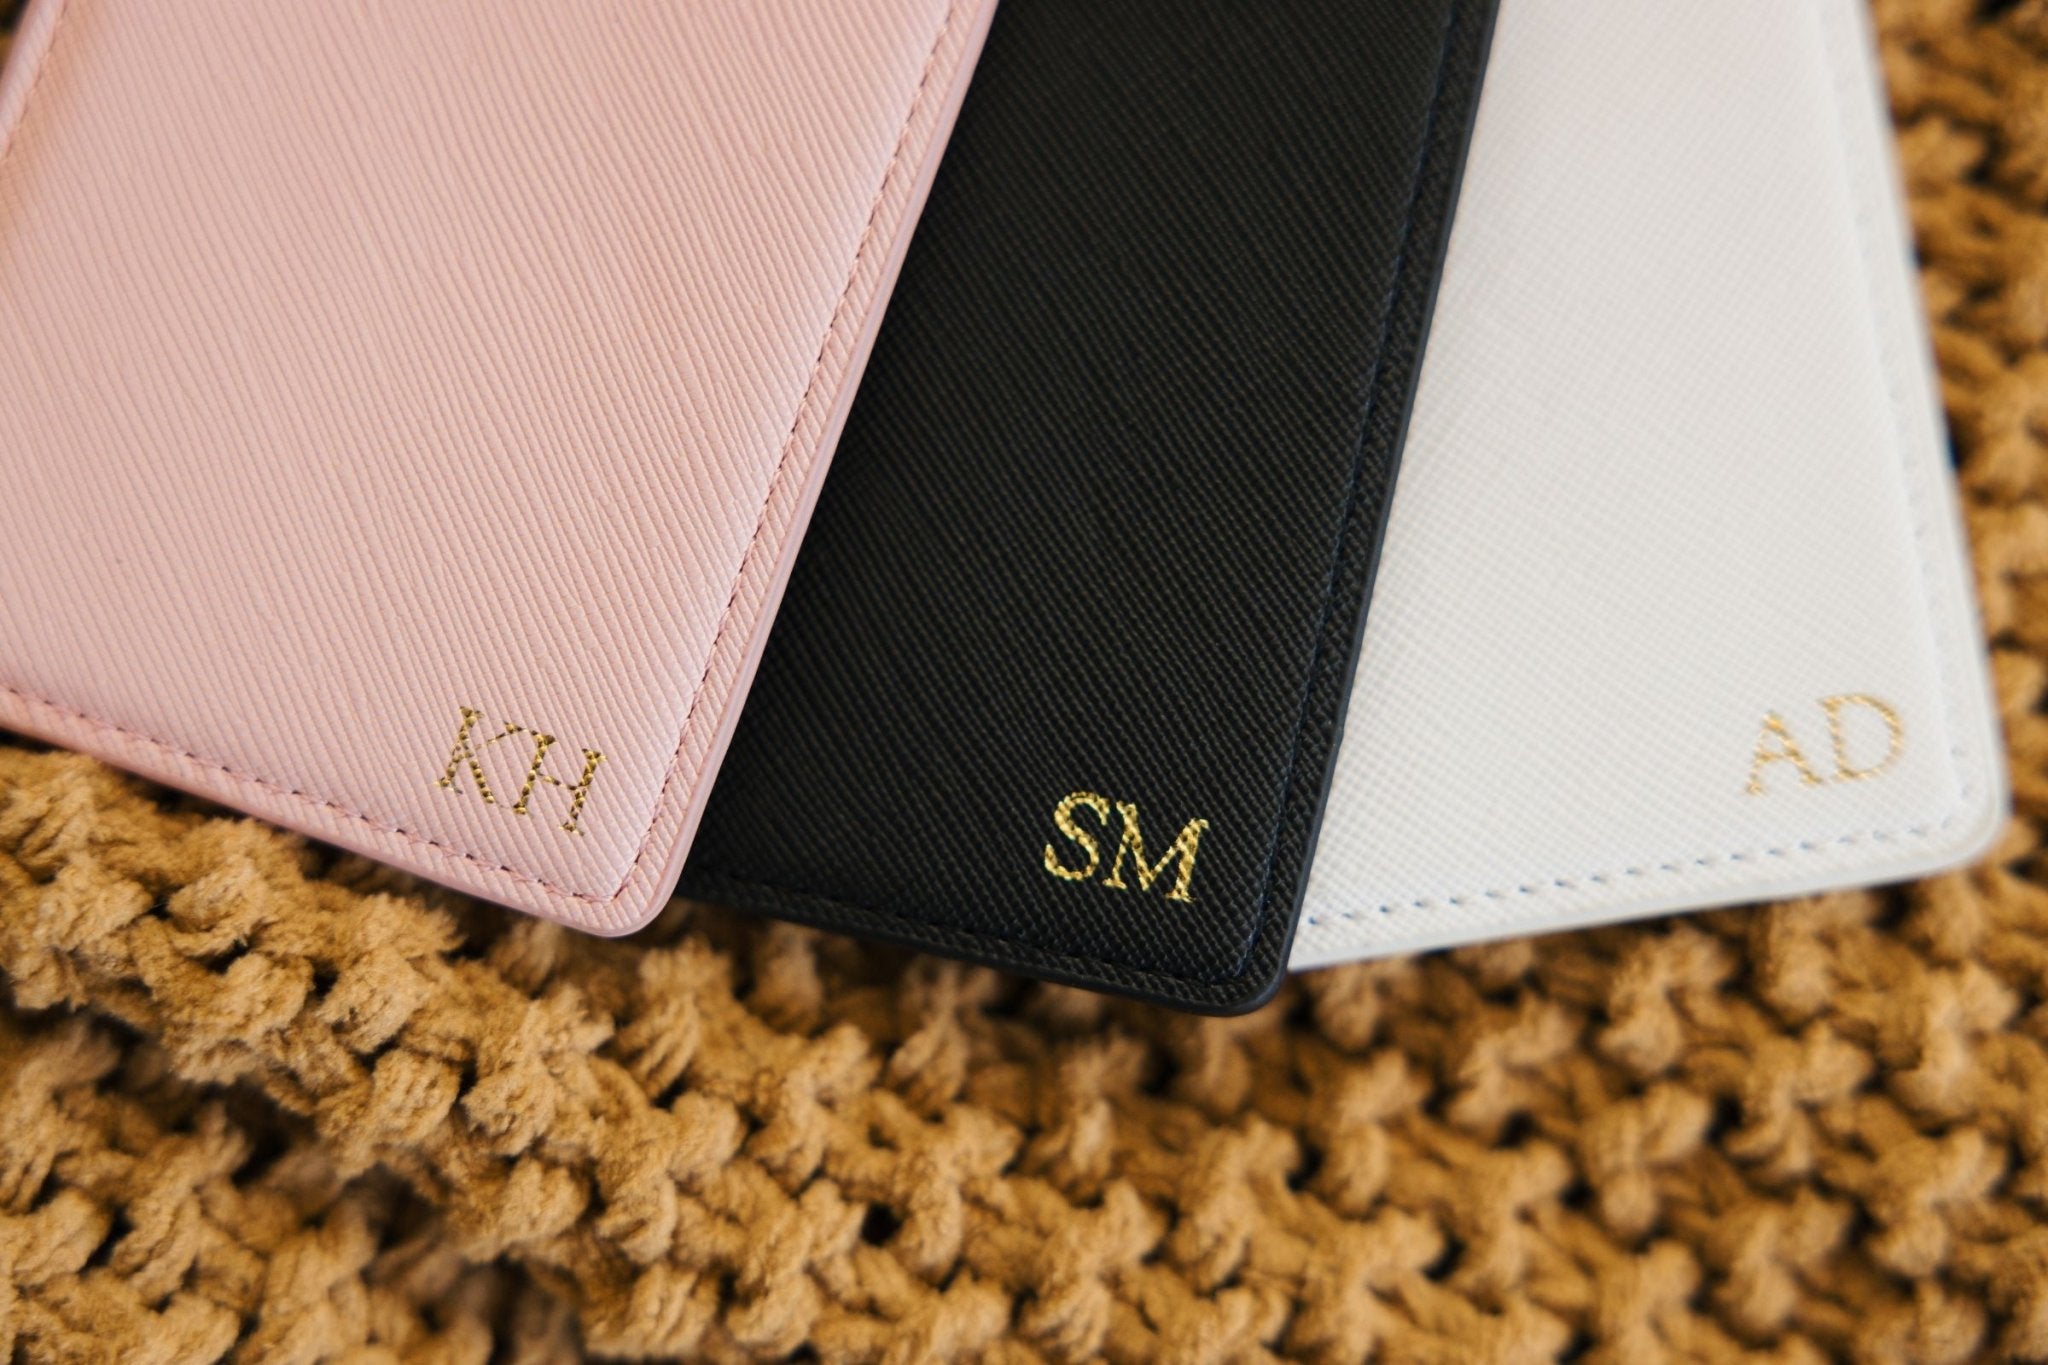 Monogrammed Passport Holder (Foil) - Sprinkled With Pink